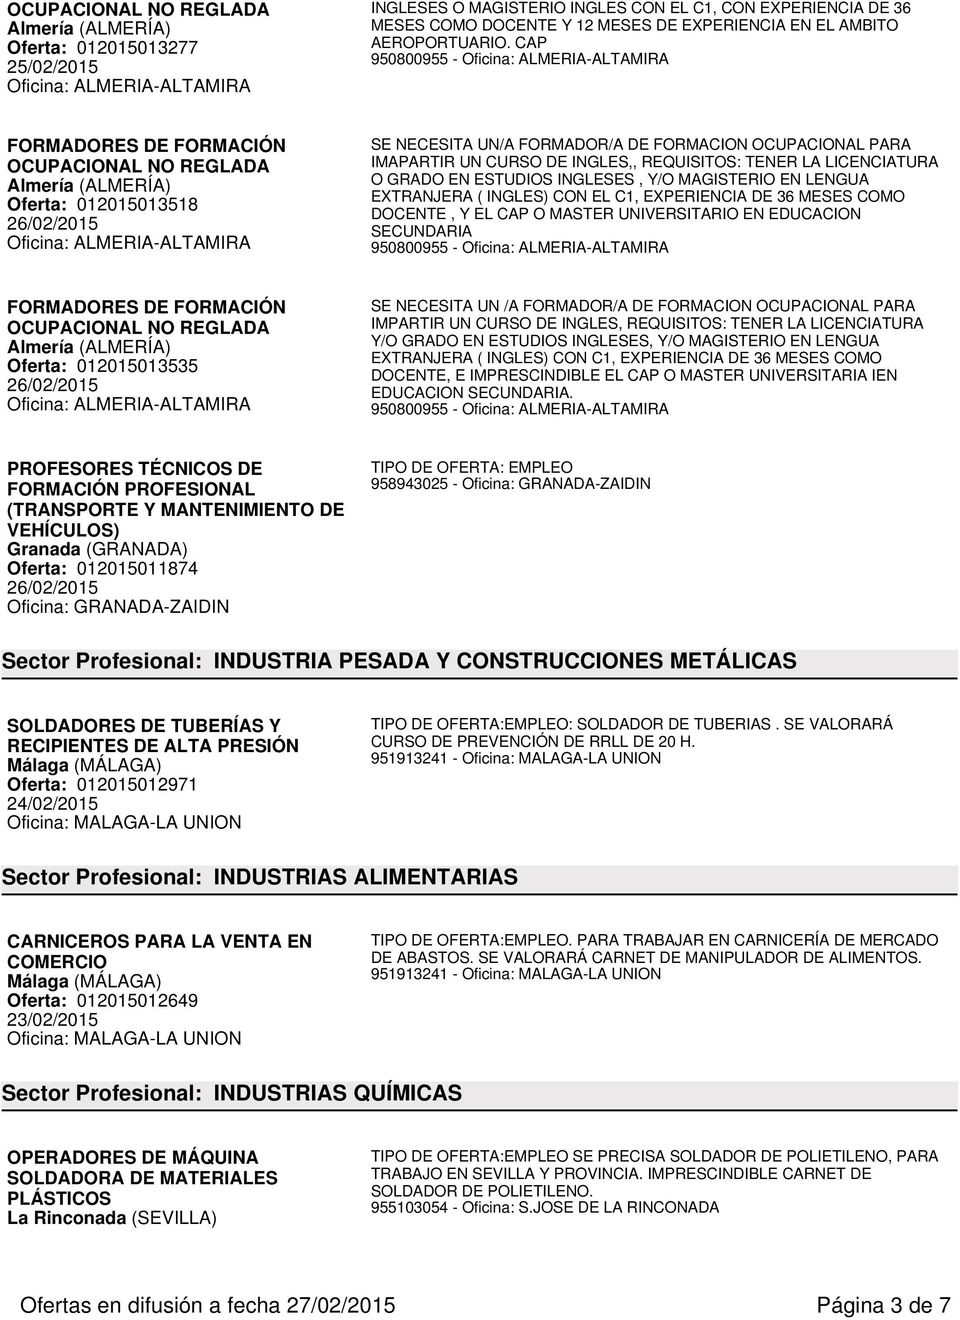 CAP 950800955 - Oficina: ALMERIA-ALTAMIRA FORMADORES DE FORMACIÓN OCUPACIONAL NO REGLADA Almería (ALMERÍA) Oferta: 012015013518 Oficina: ALMERIA-ALTAMIRA SE NECESITA UN/A FORMADOR/A DE FORMACION